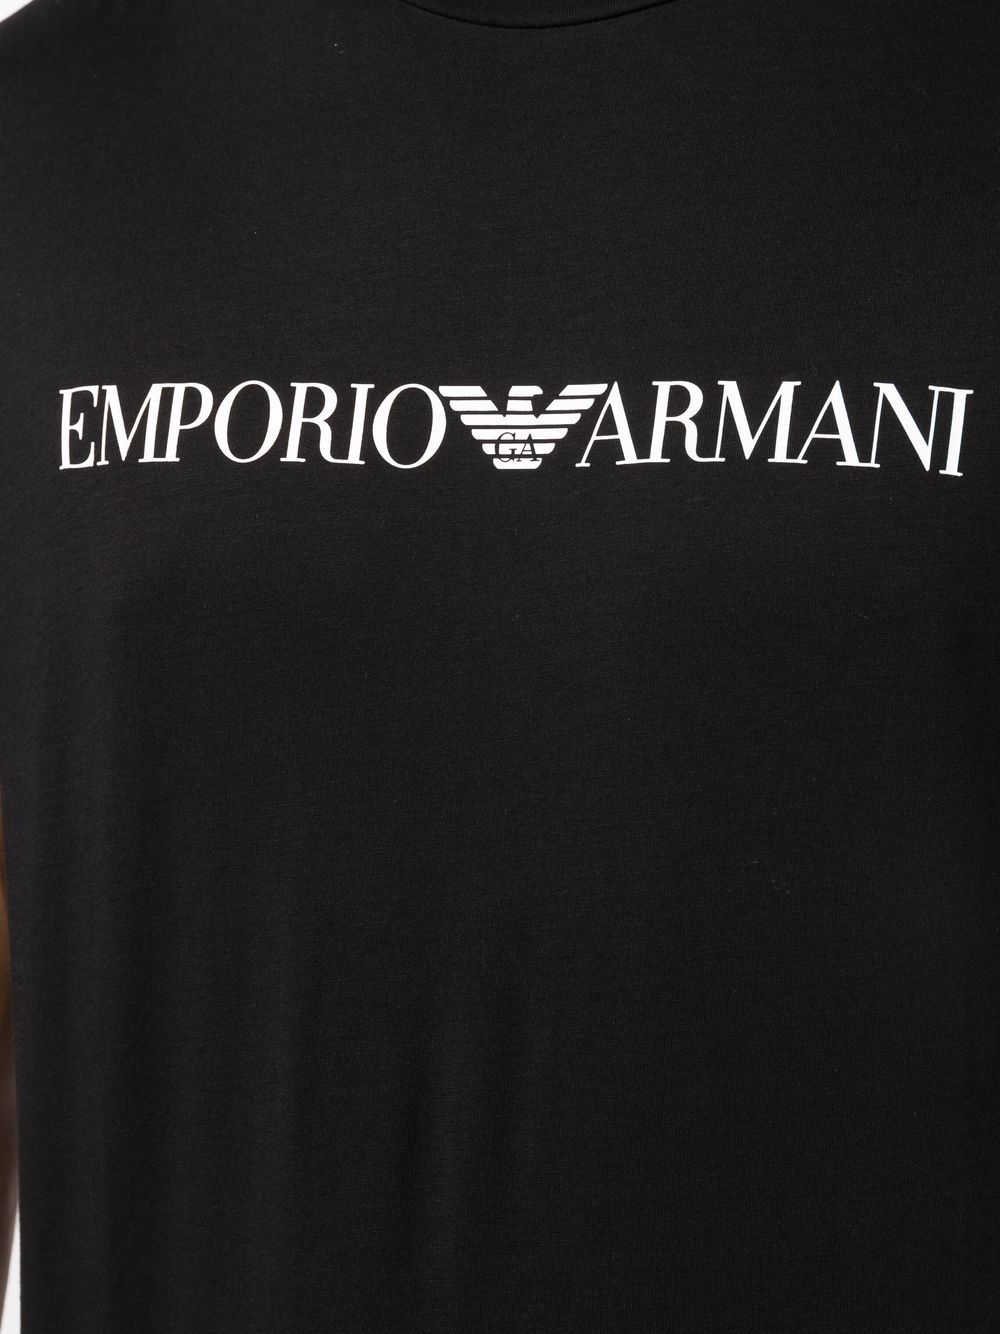 Black emporio logo t-shirt